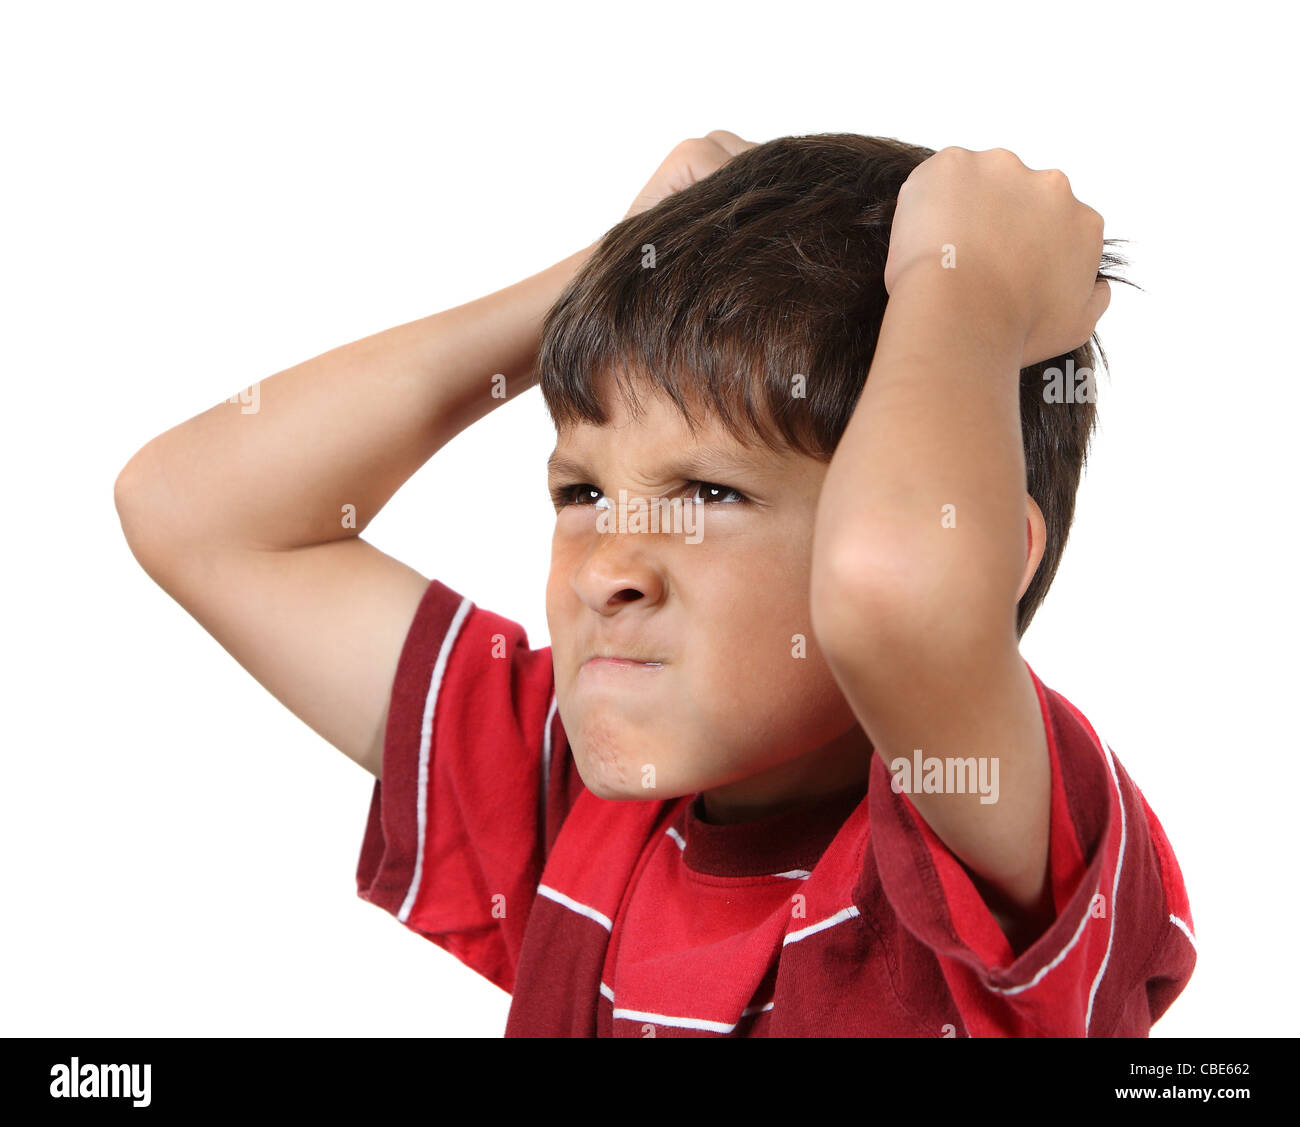 Mad o frustrato ragazzo giovane con le mani per afferrare i suoi capelli indossando maglietta rossa su sfondo bianco Foto Stock